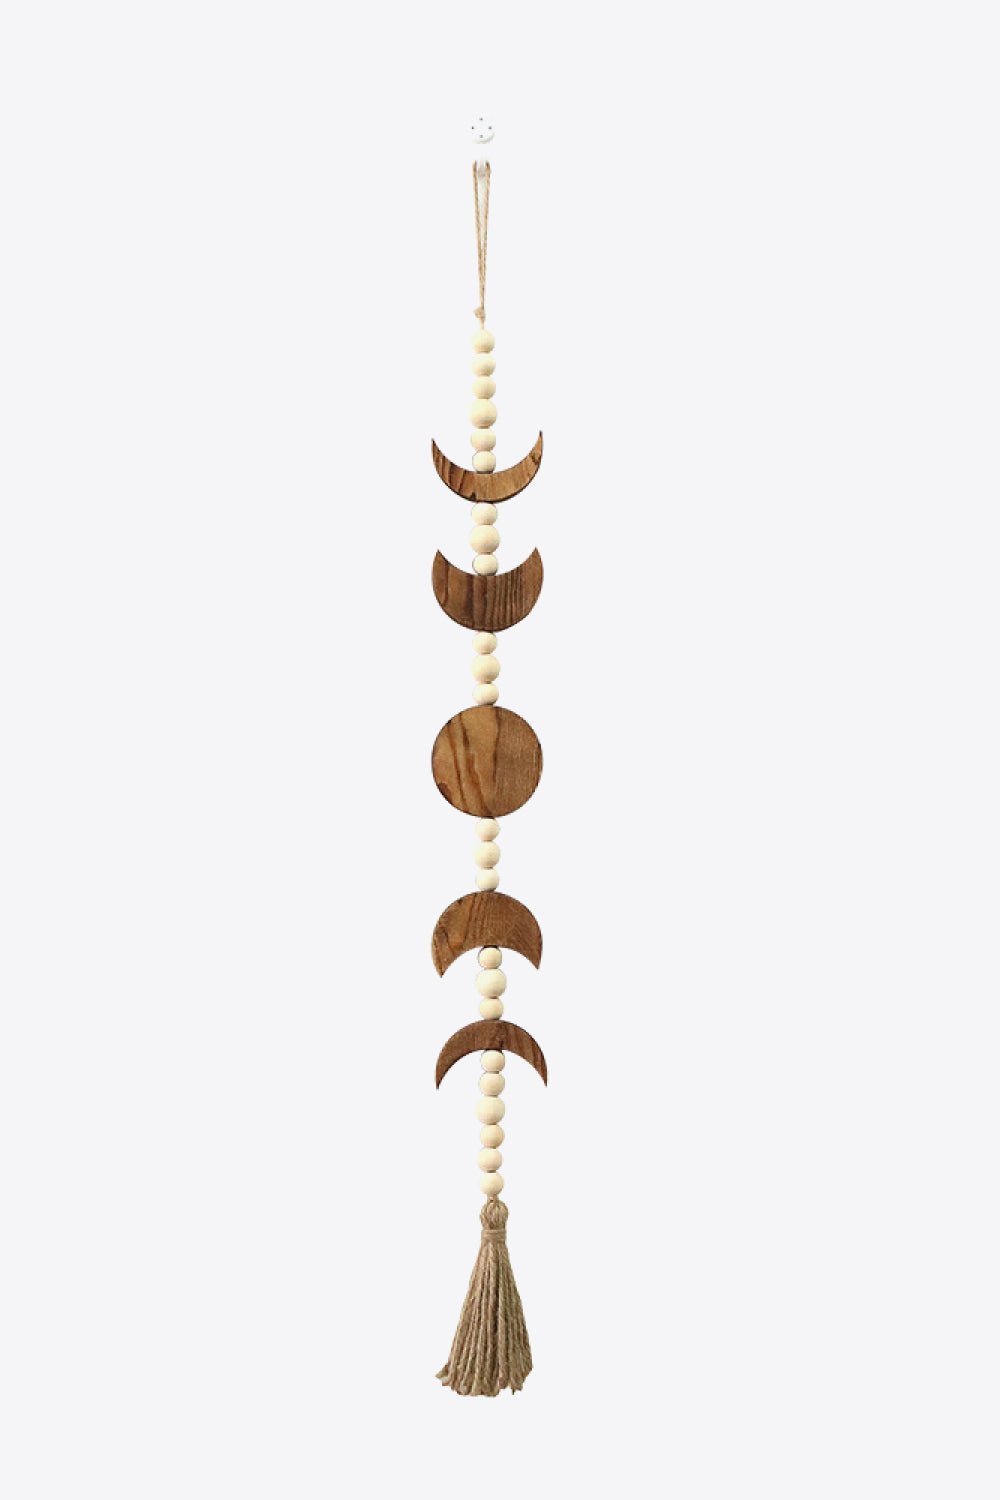 Wooden Tassel Wall Hanging - Tangerine Goddess